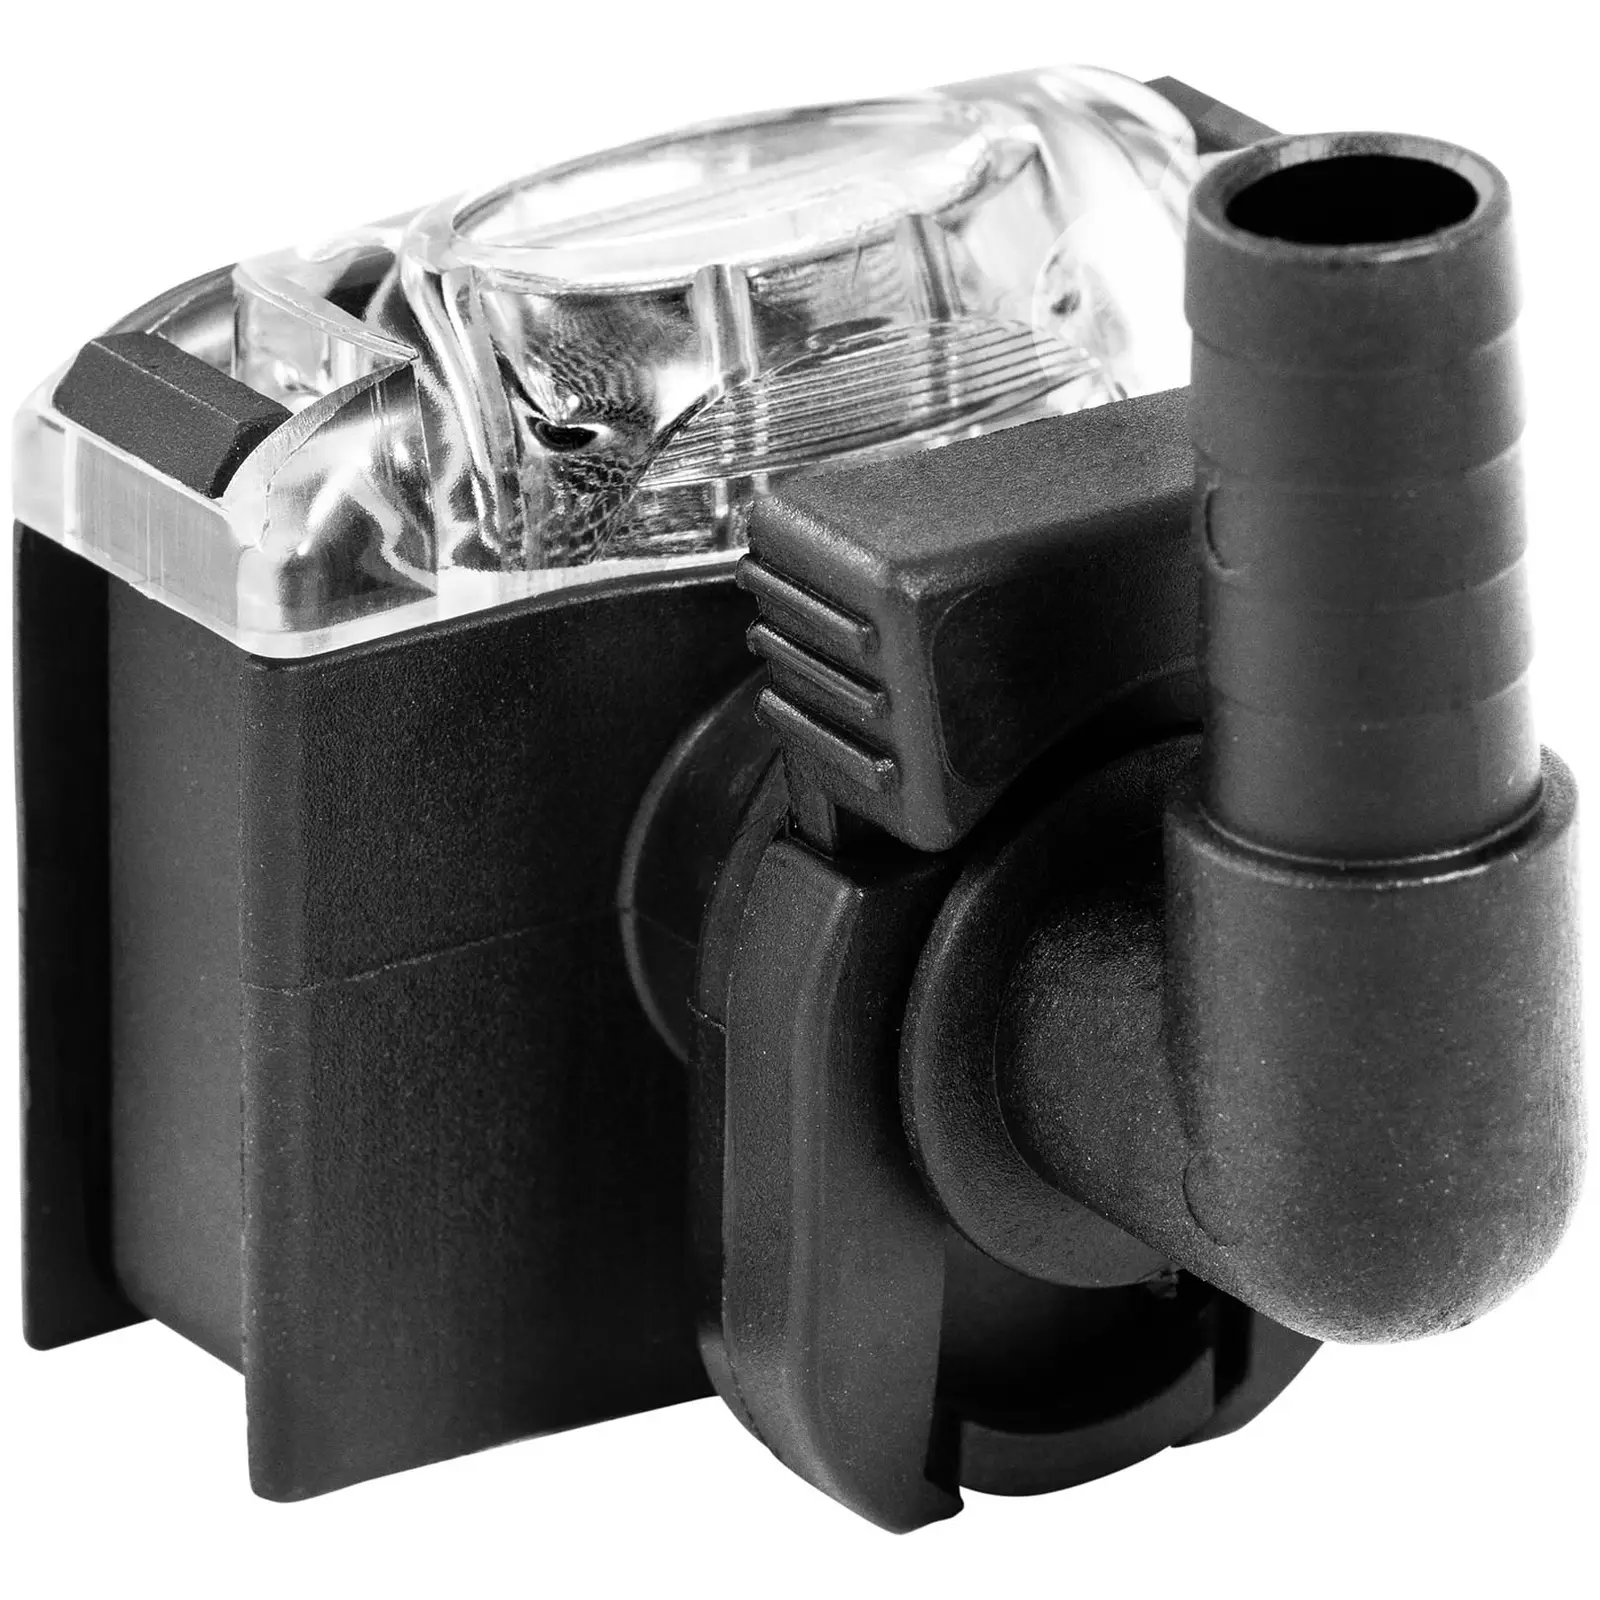 Pompa pressione acqua con pressostato - 12 V - 10 l/min - max. 60 °C - 1,2 bar